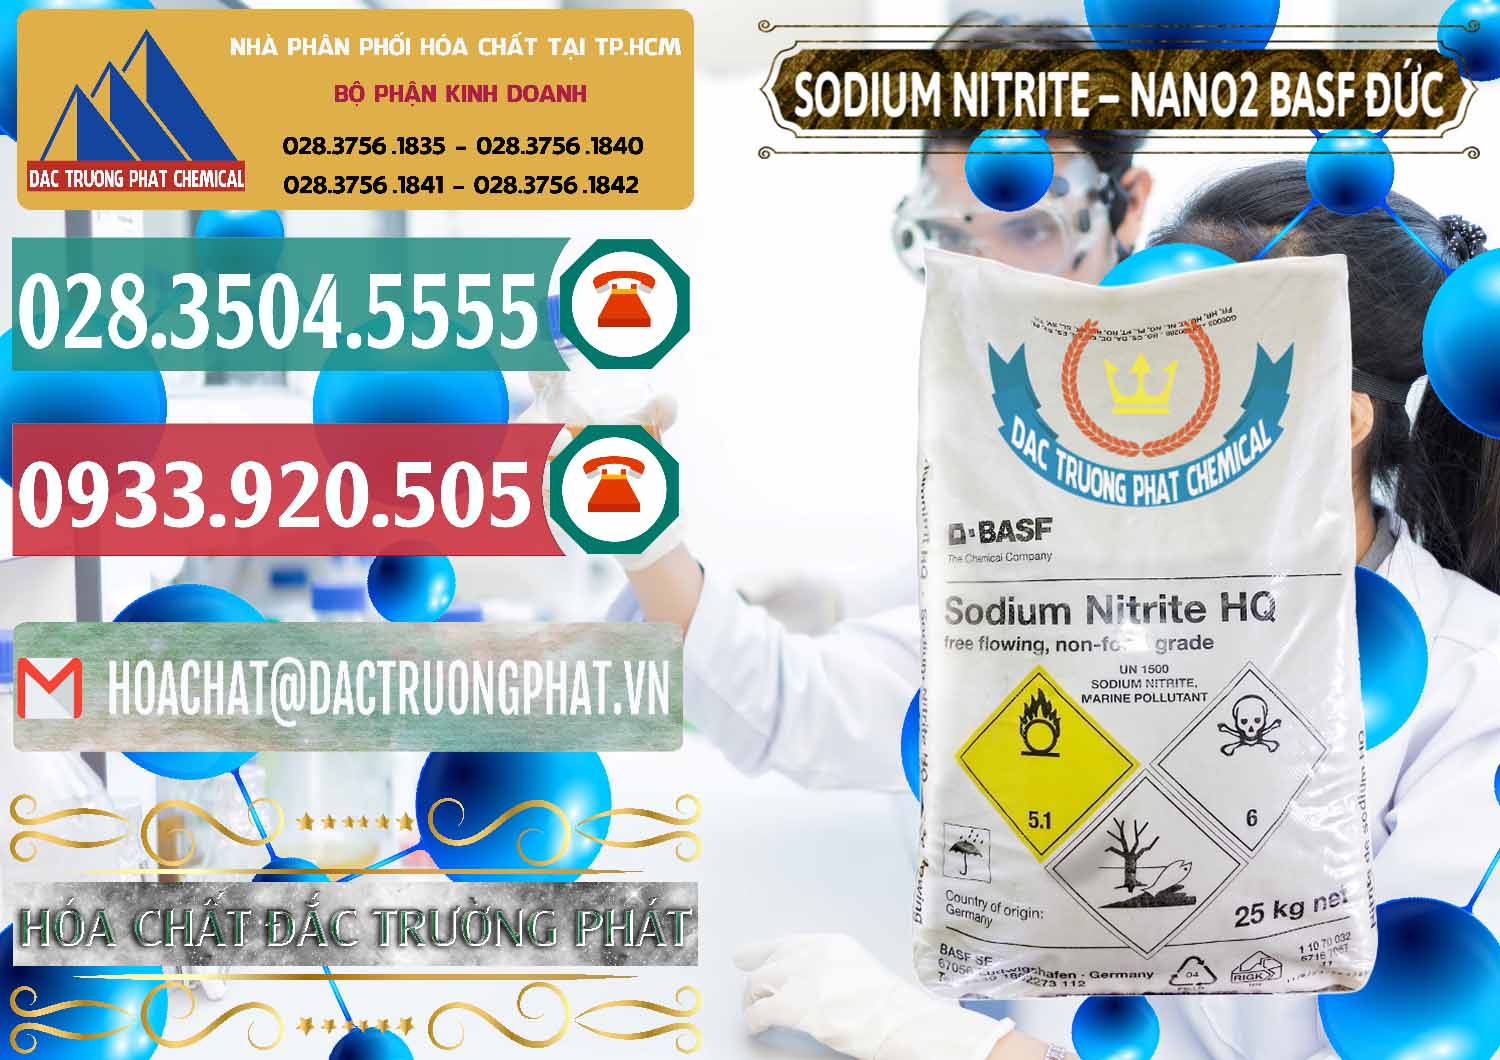 Cty bán & phân phối Sodium Nitrite - NANO2 Đức BASF Germany - 0148 - Nơi chuyên cung cấp _ kinh doanh hóa chất tại TP.HCM - muabanhoachat.vn